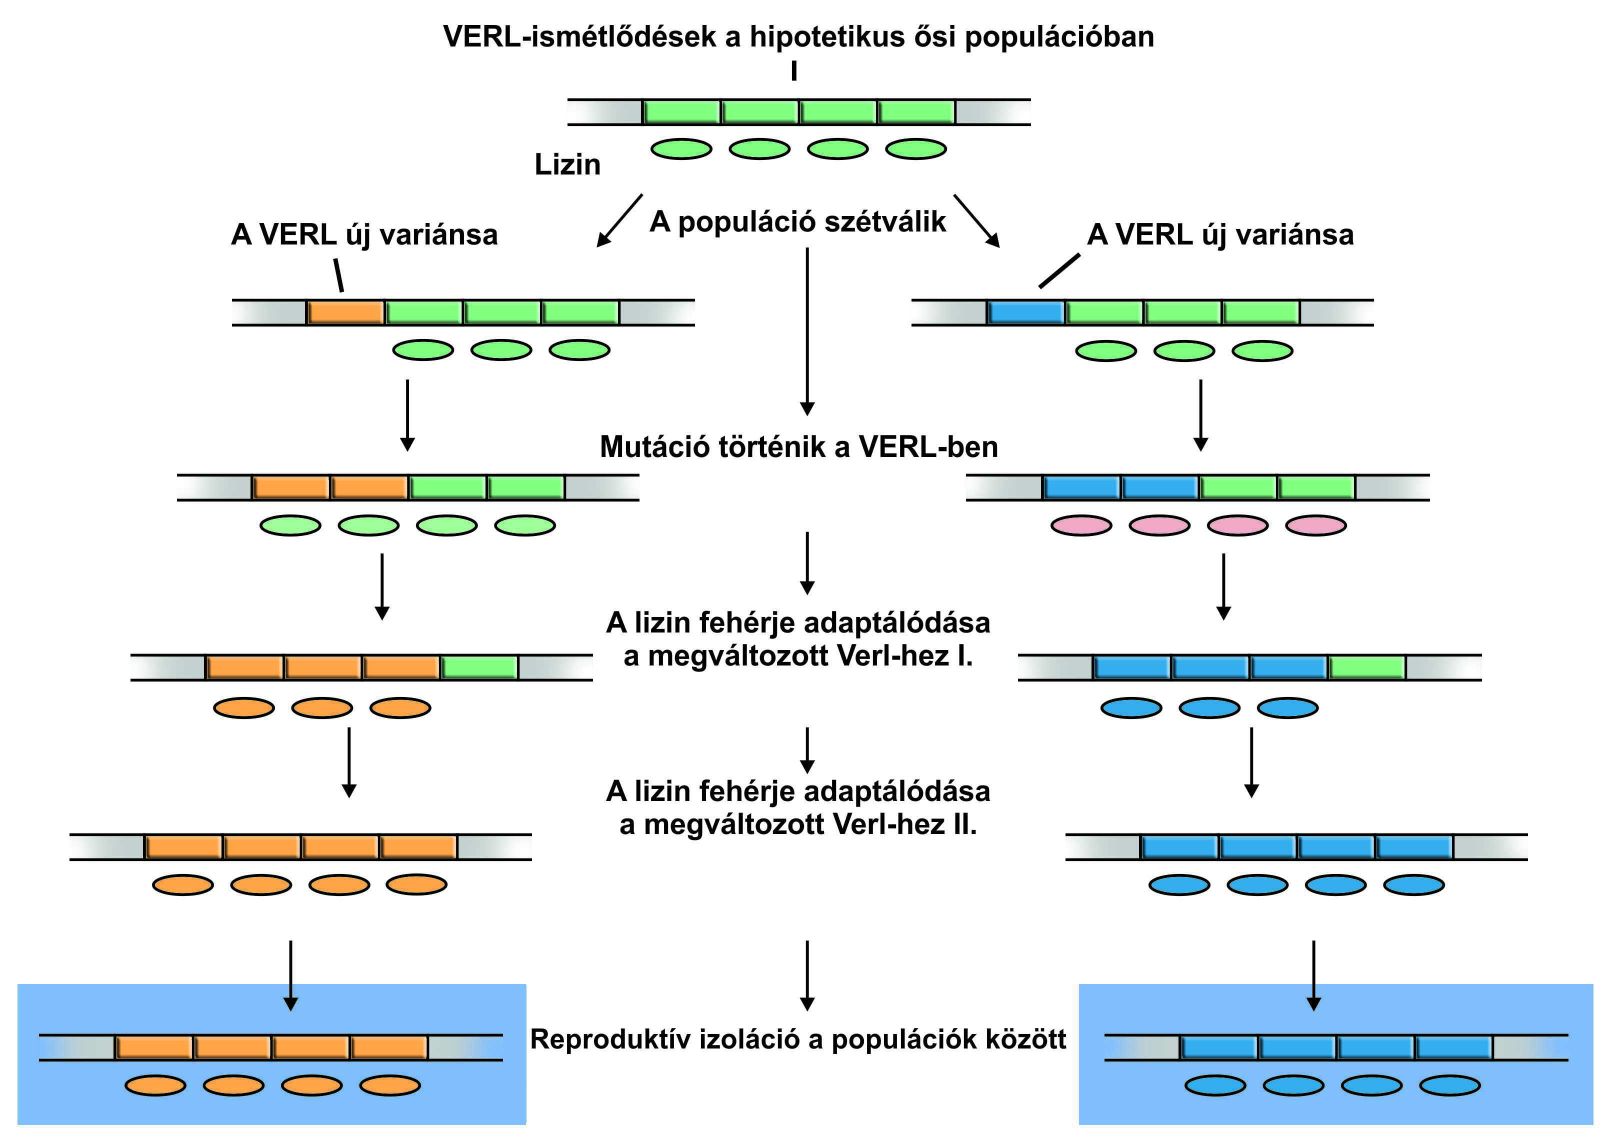 A VERL fehérjék változásai elősegítik a reproduktív izolációt.